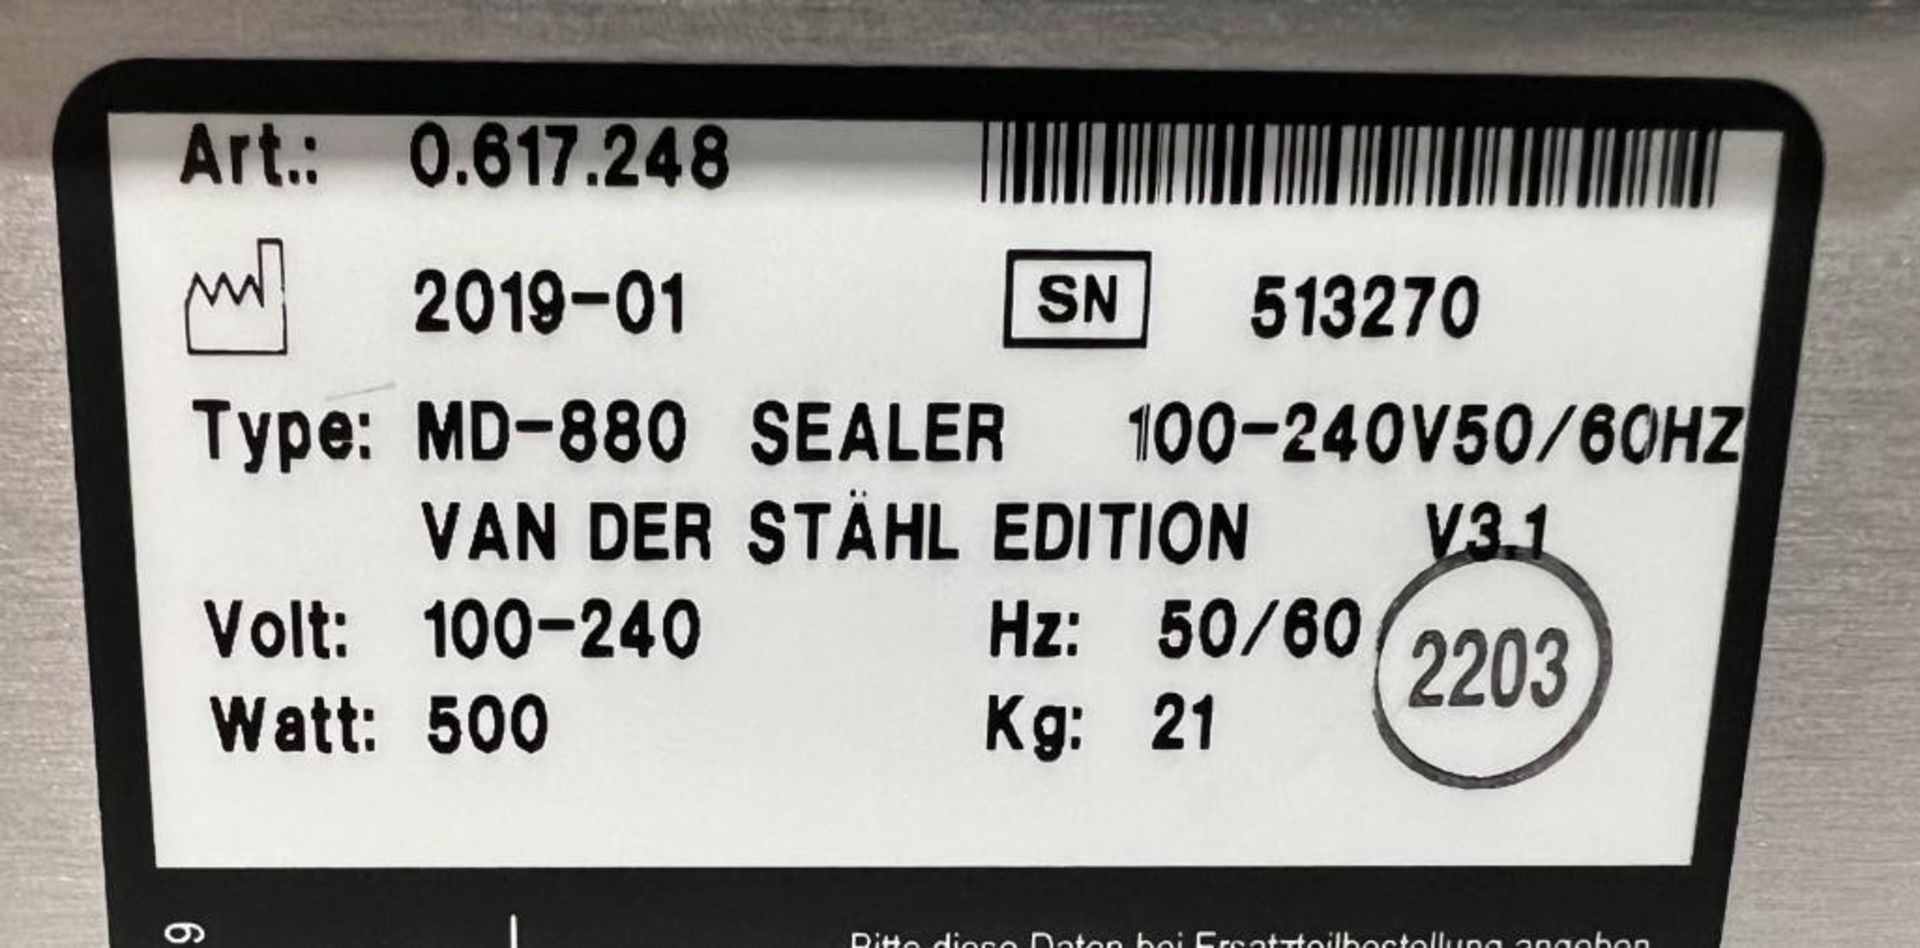 Van Der Stahl MD Series Pouch Sealer, Model MD-880, Serial# 513270, Built 01-2019. - Image 6 of 6